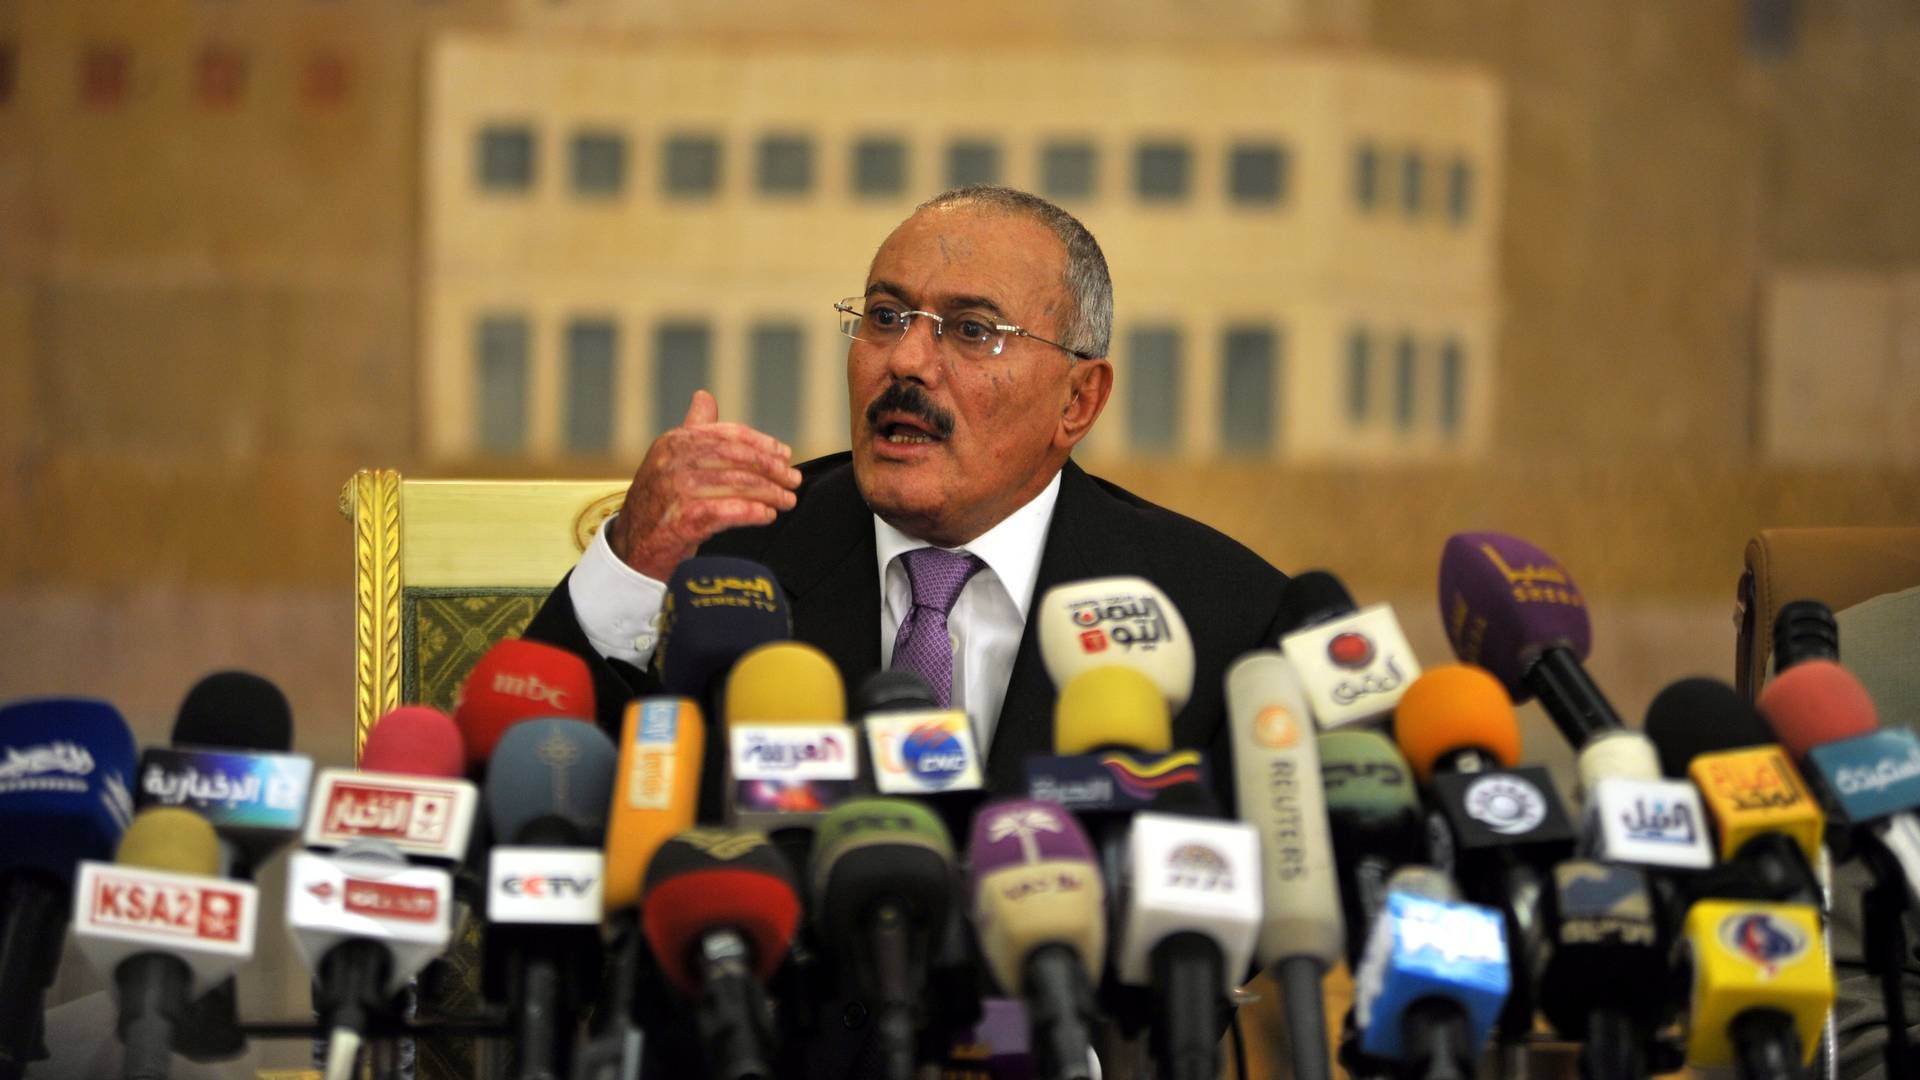 Die ältere Aufnahme zeigt den damaligen jemenitischen Präsidenten Ali Abdullah Saleh bei einer Pressekonferenz im Jahr 2011. | Foto: picture alliance / dpa | Yahya Arhab